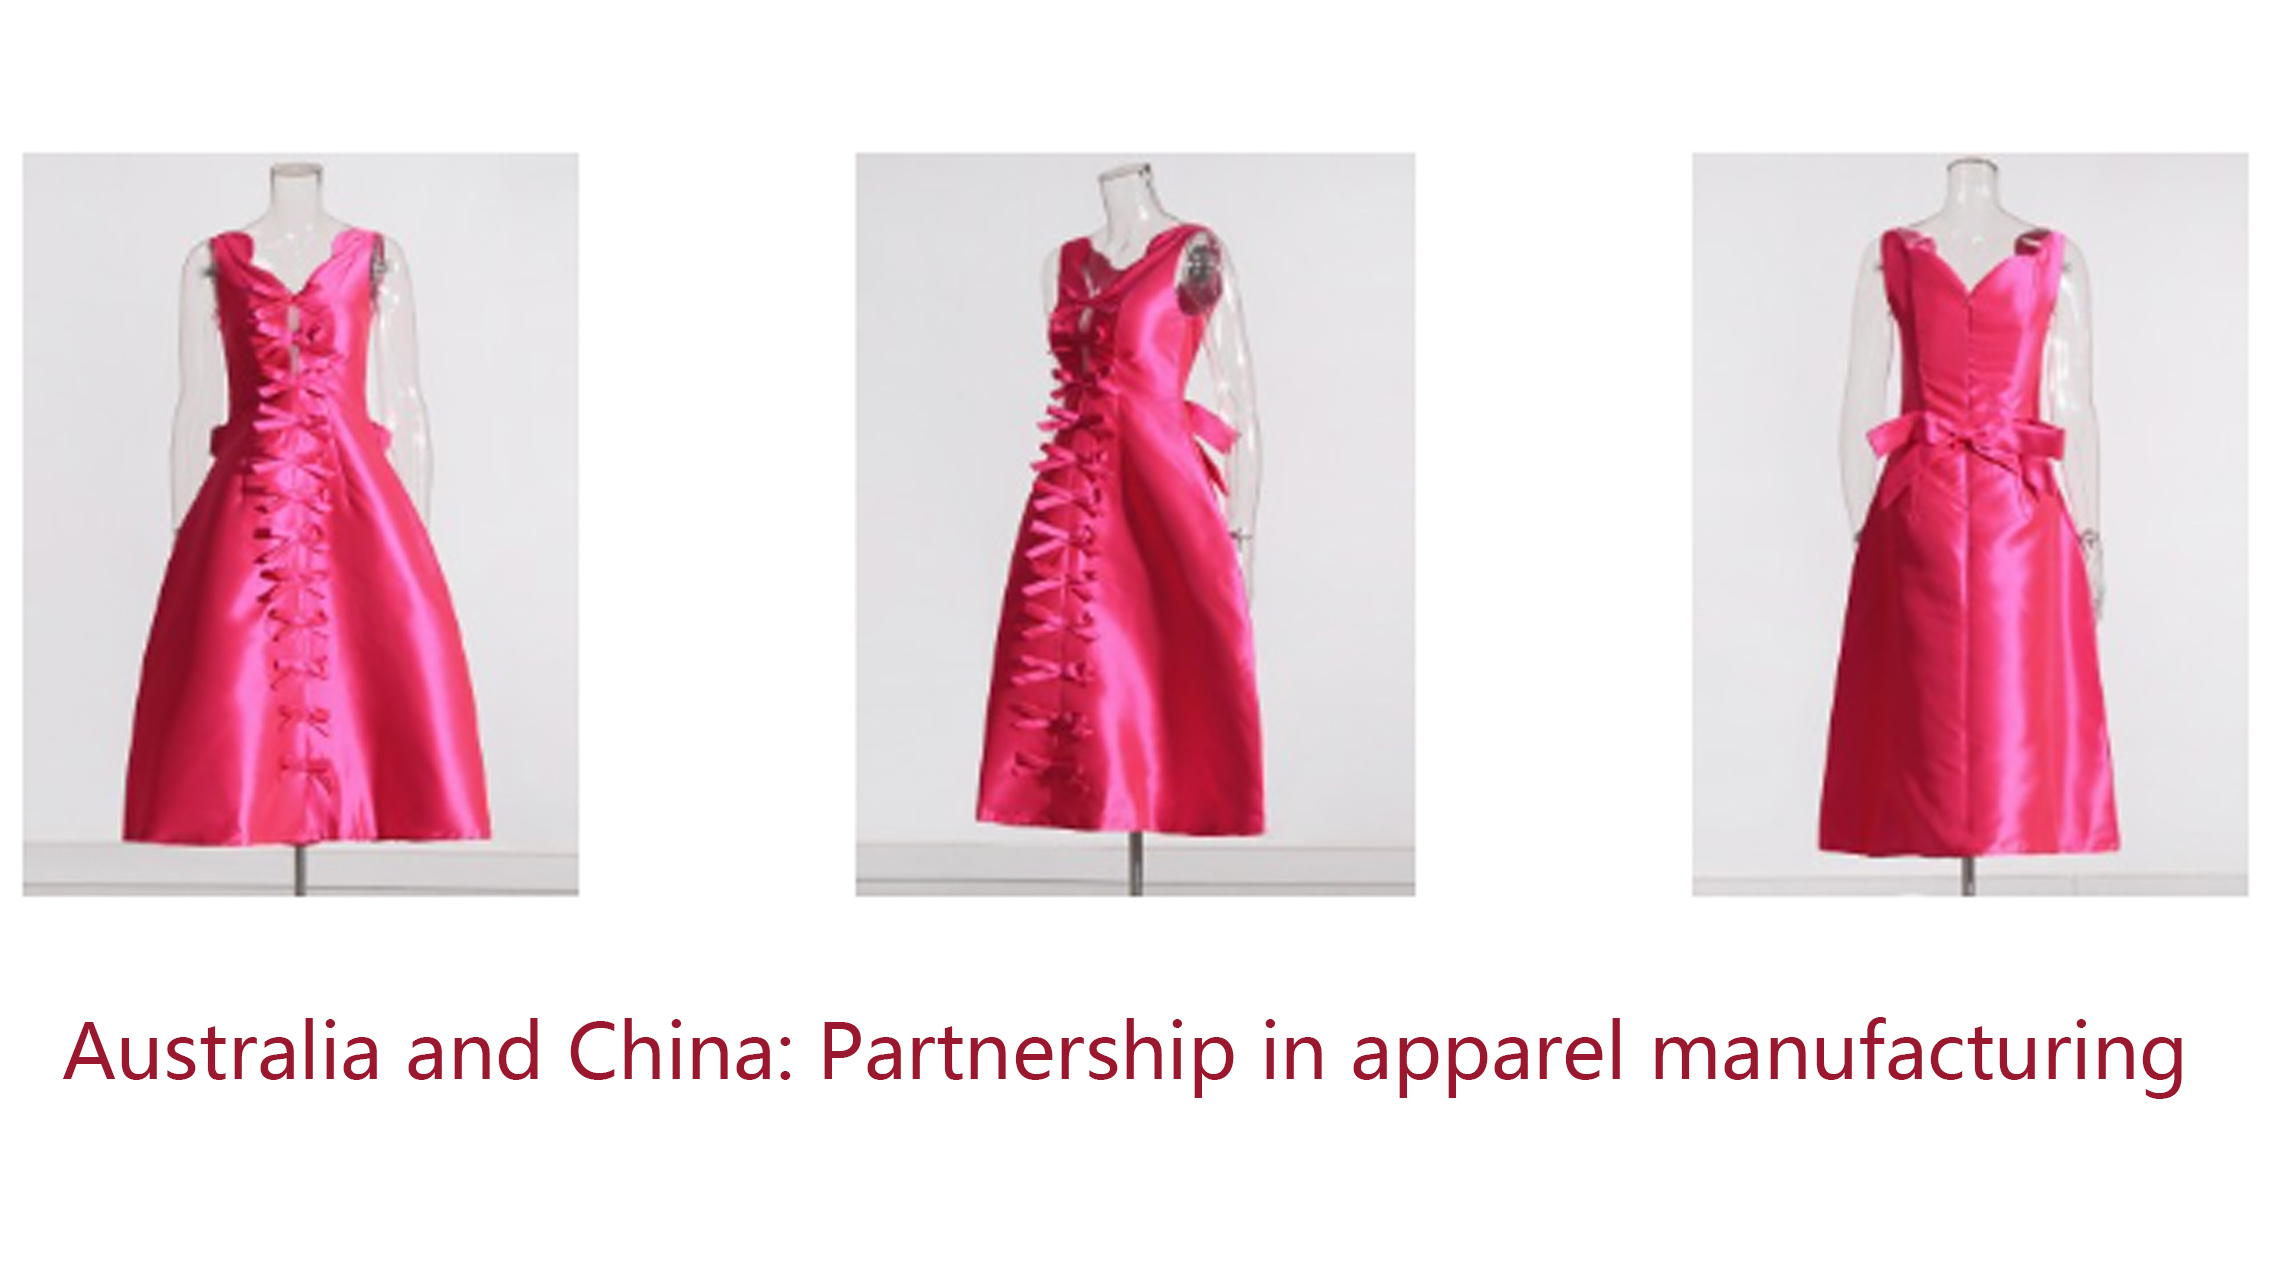 Australia jeung Cina: Partnership dina manufaktur apparel